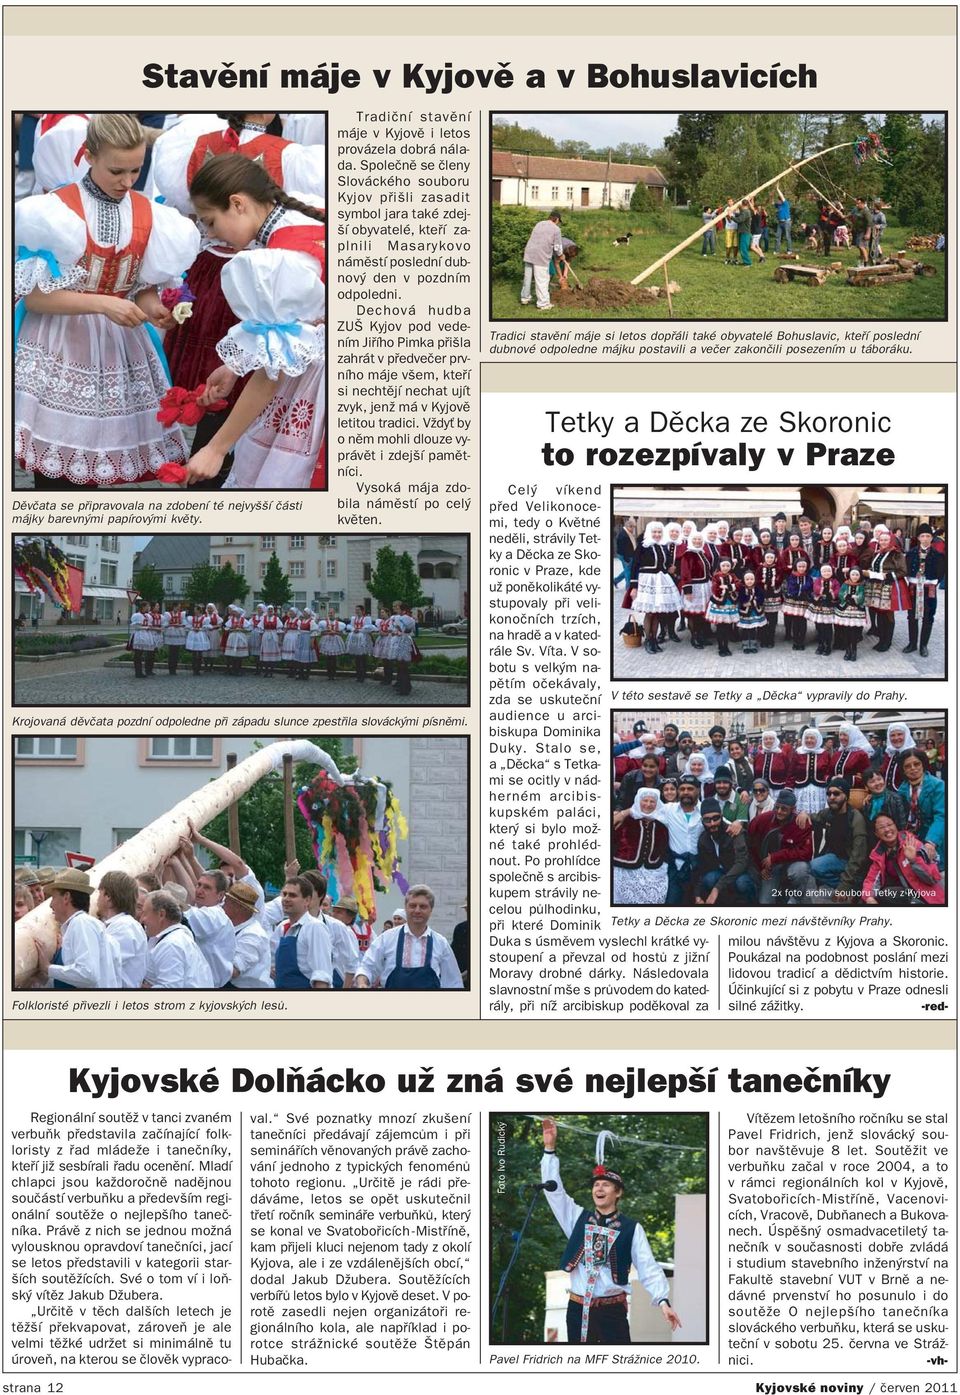 Společně se členy Slováckého souboru Kyjov přišli zasadit symbol jara také zdej ší obyvatelé, kteří za plnili Masarykovo náměstí poslední dub nový den v pozdním odpoledni.